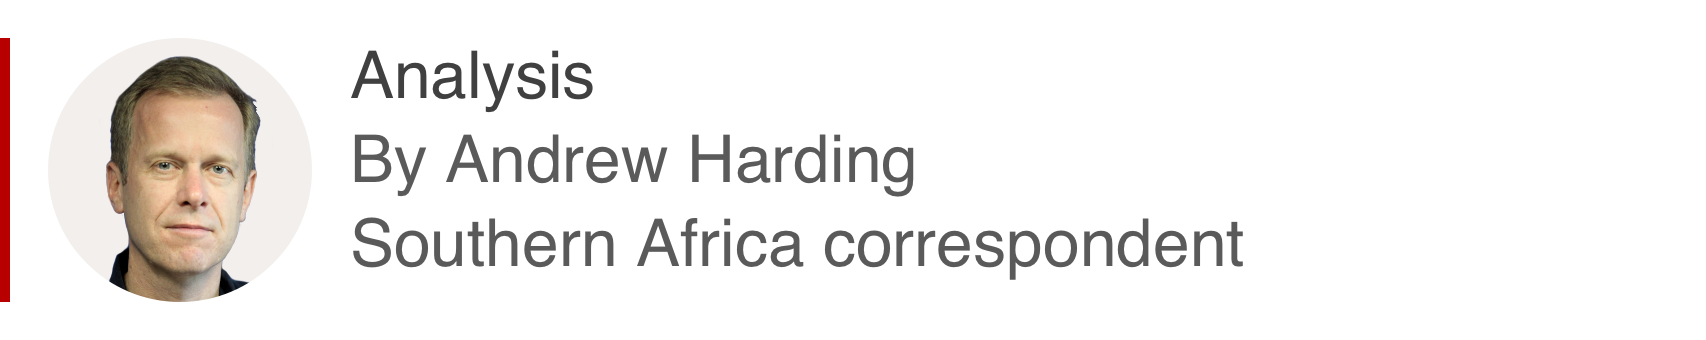 Аналитическая коробка Эндрю Хардинга, корреспондента из южной части Африки